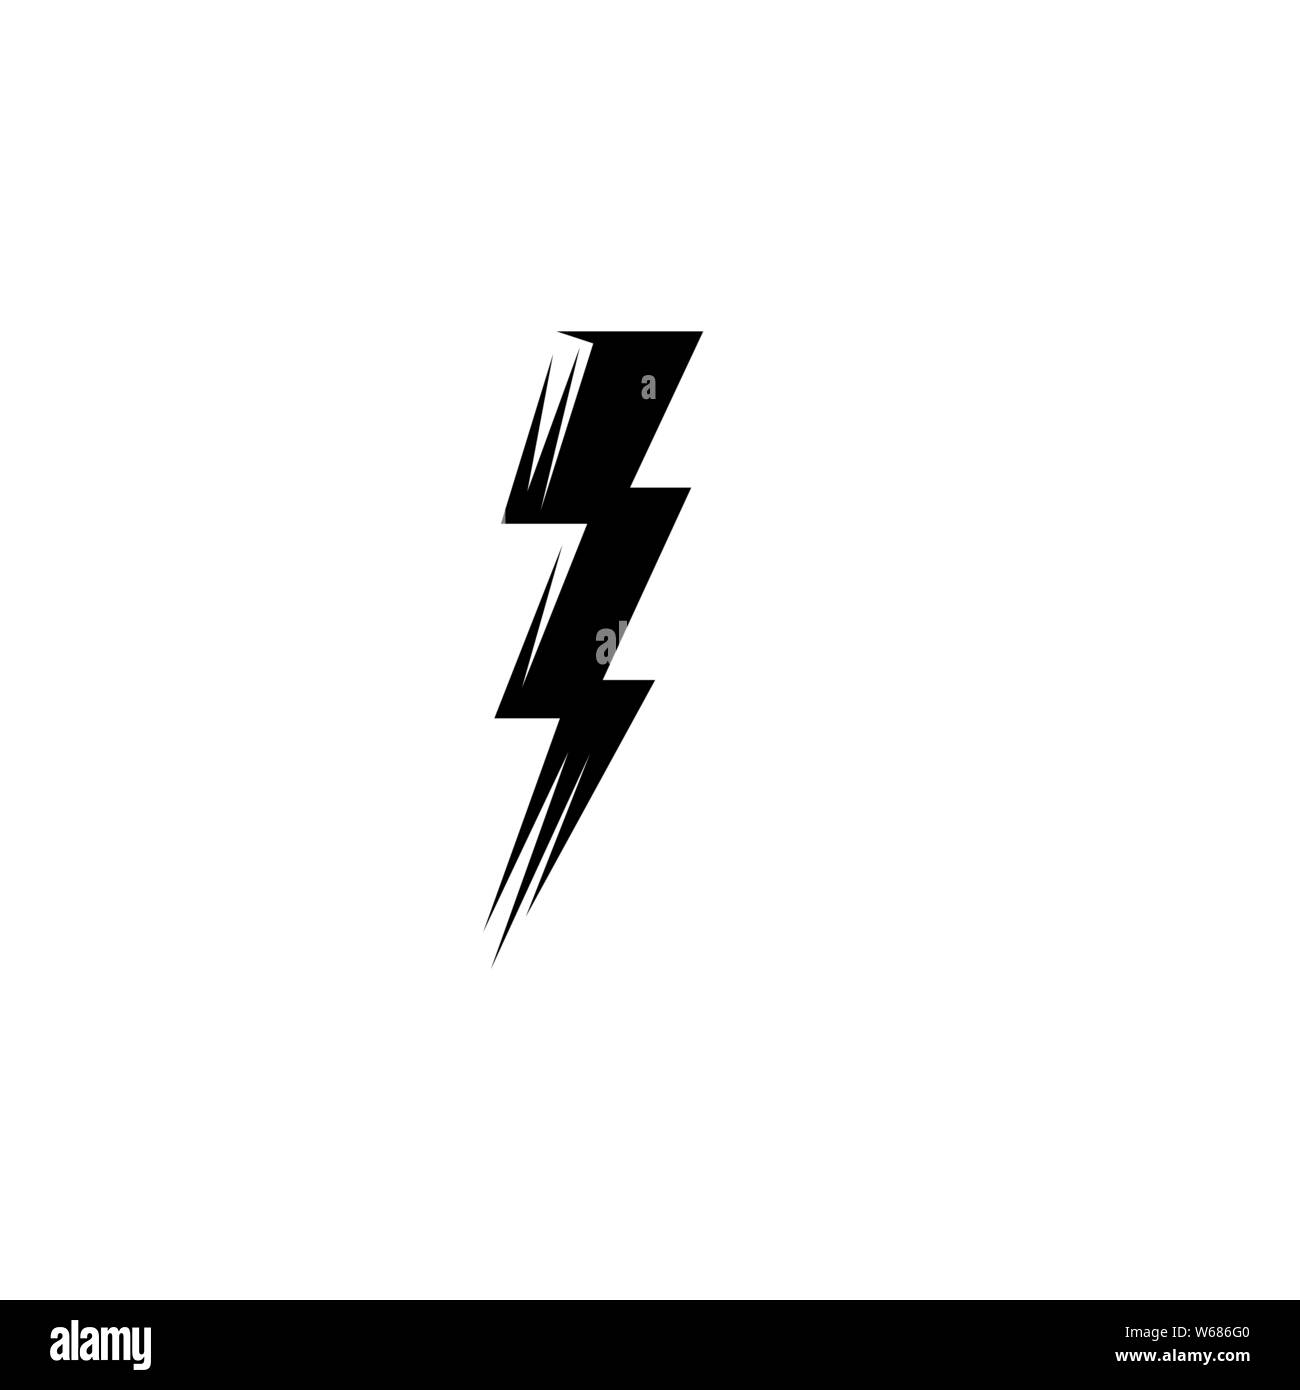 Lightning bolt flash thunderbolt icons vectors Stock Vector